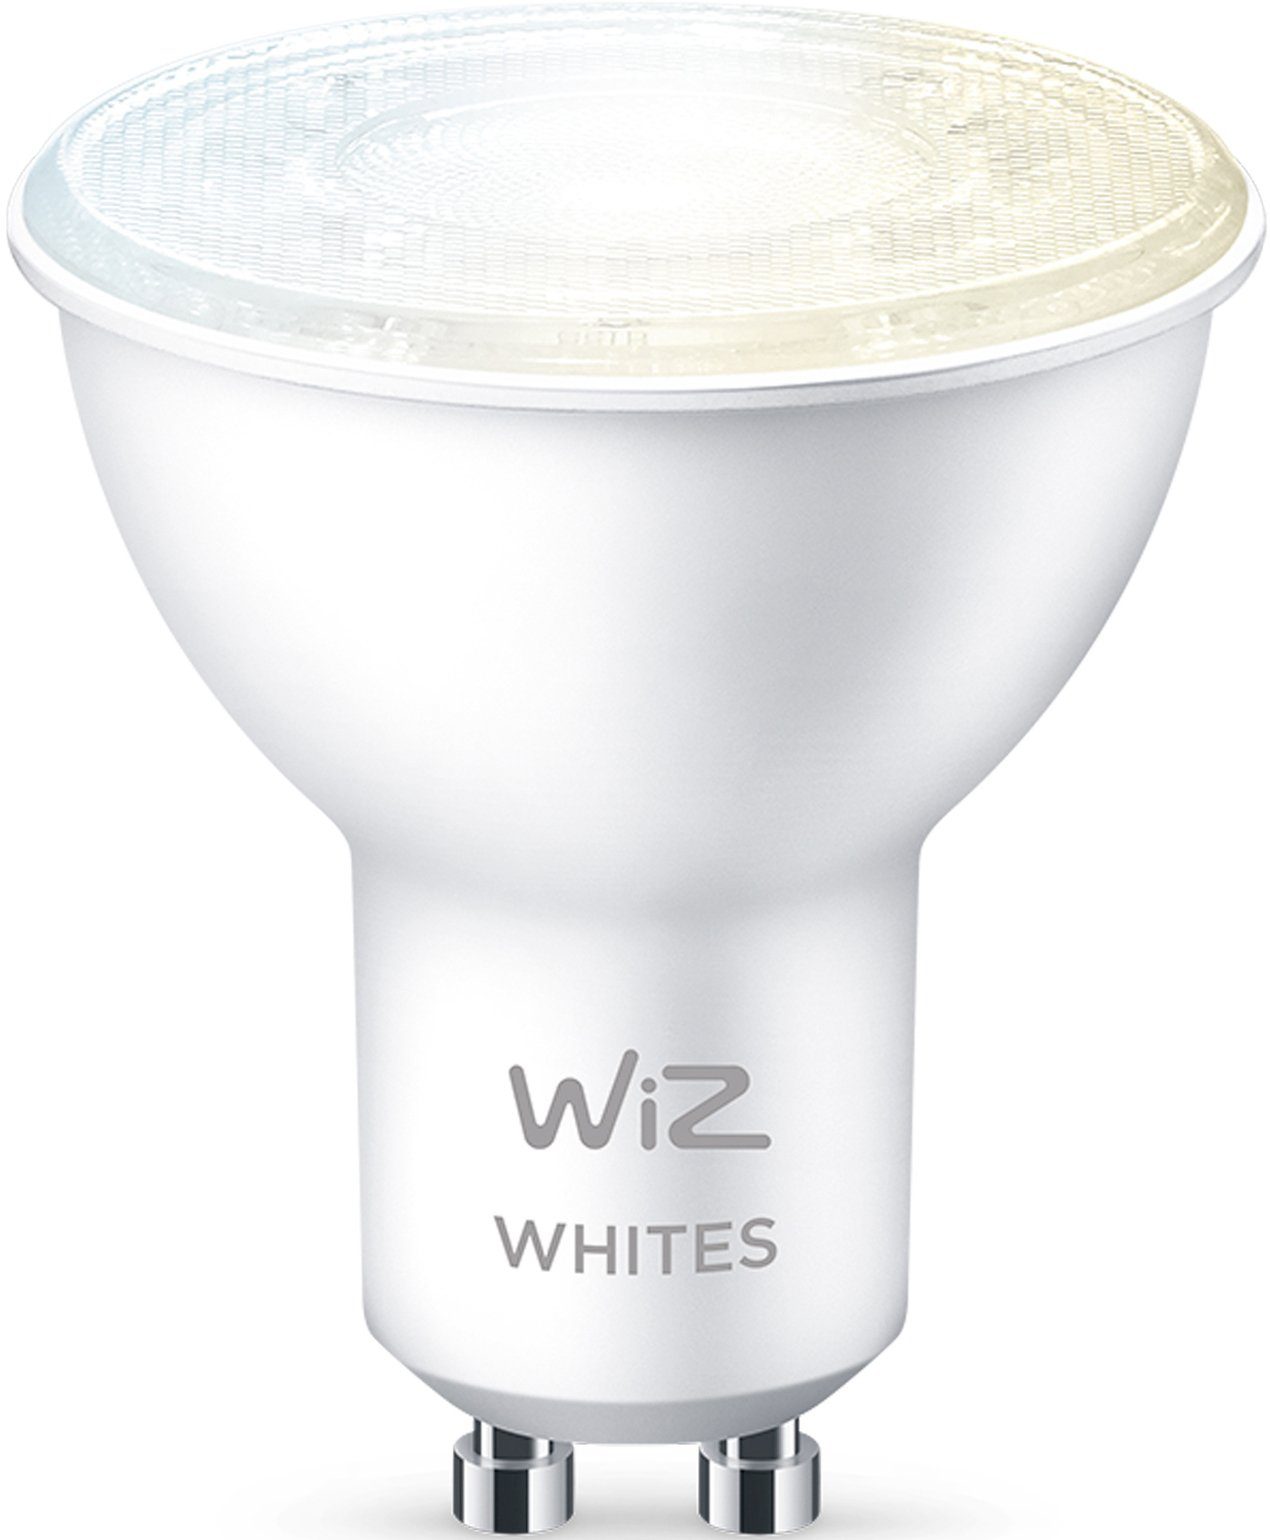 WiZ LED-Leuchtmittel White 50W GU10 Spot Tunable matt Einzelpack, GU10, 1 St., Warmweiß, Kreieren Sie mit Wiz Tunable White LED Lampen smarte Beleuchtung